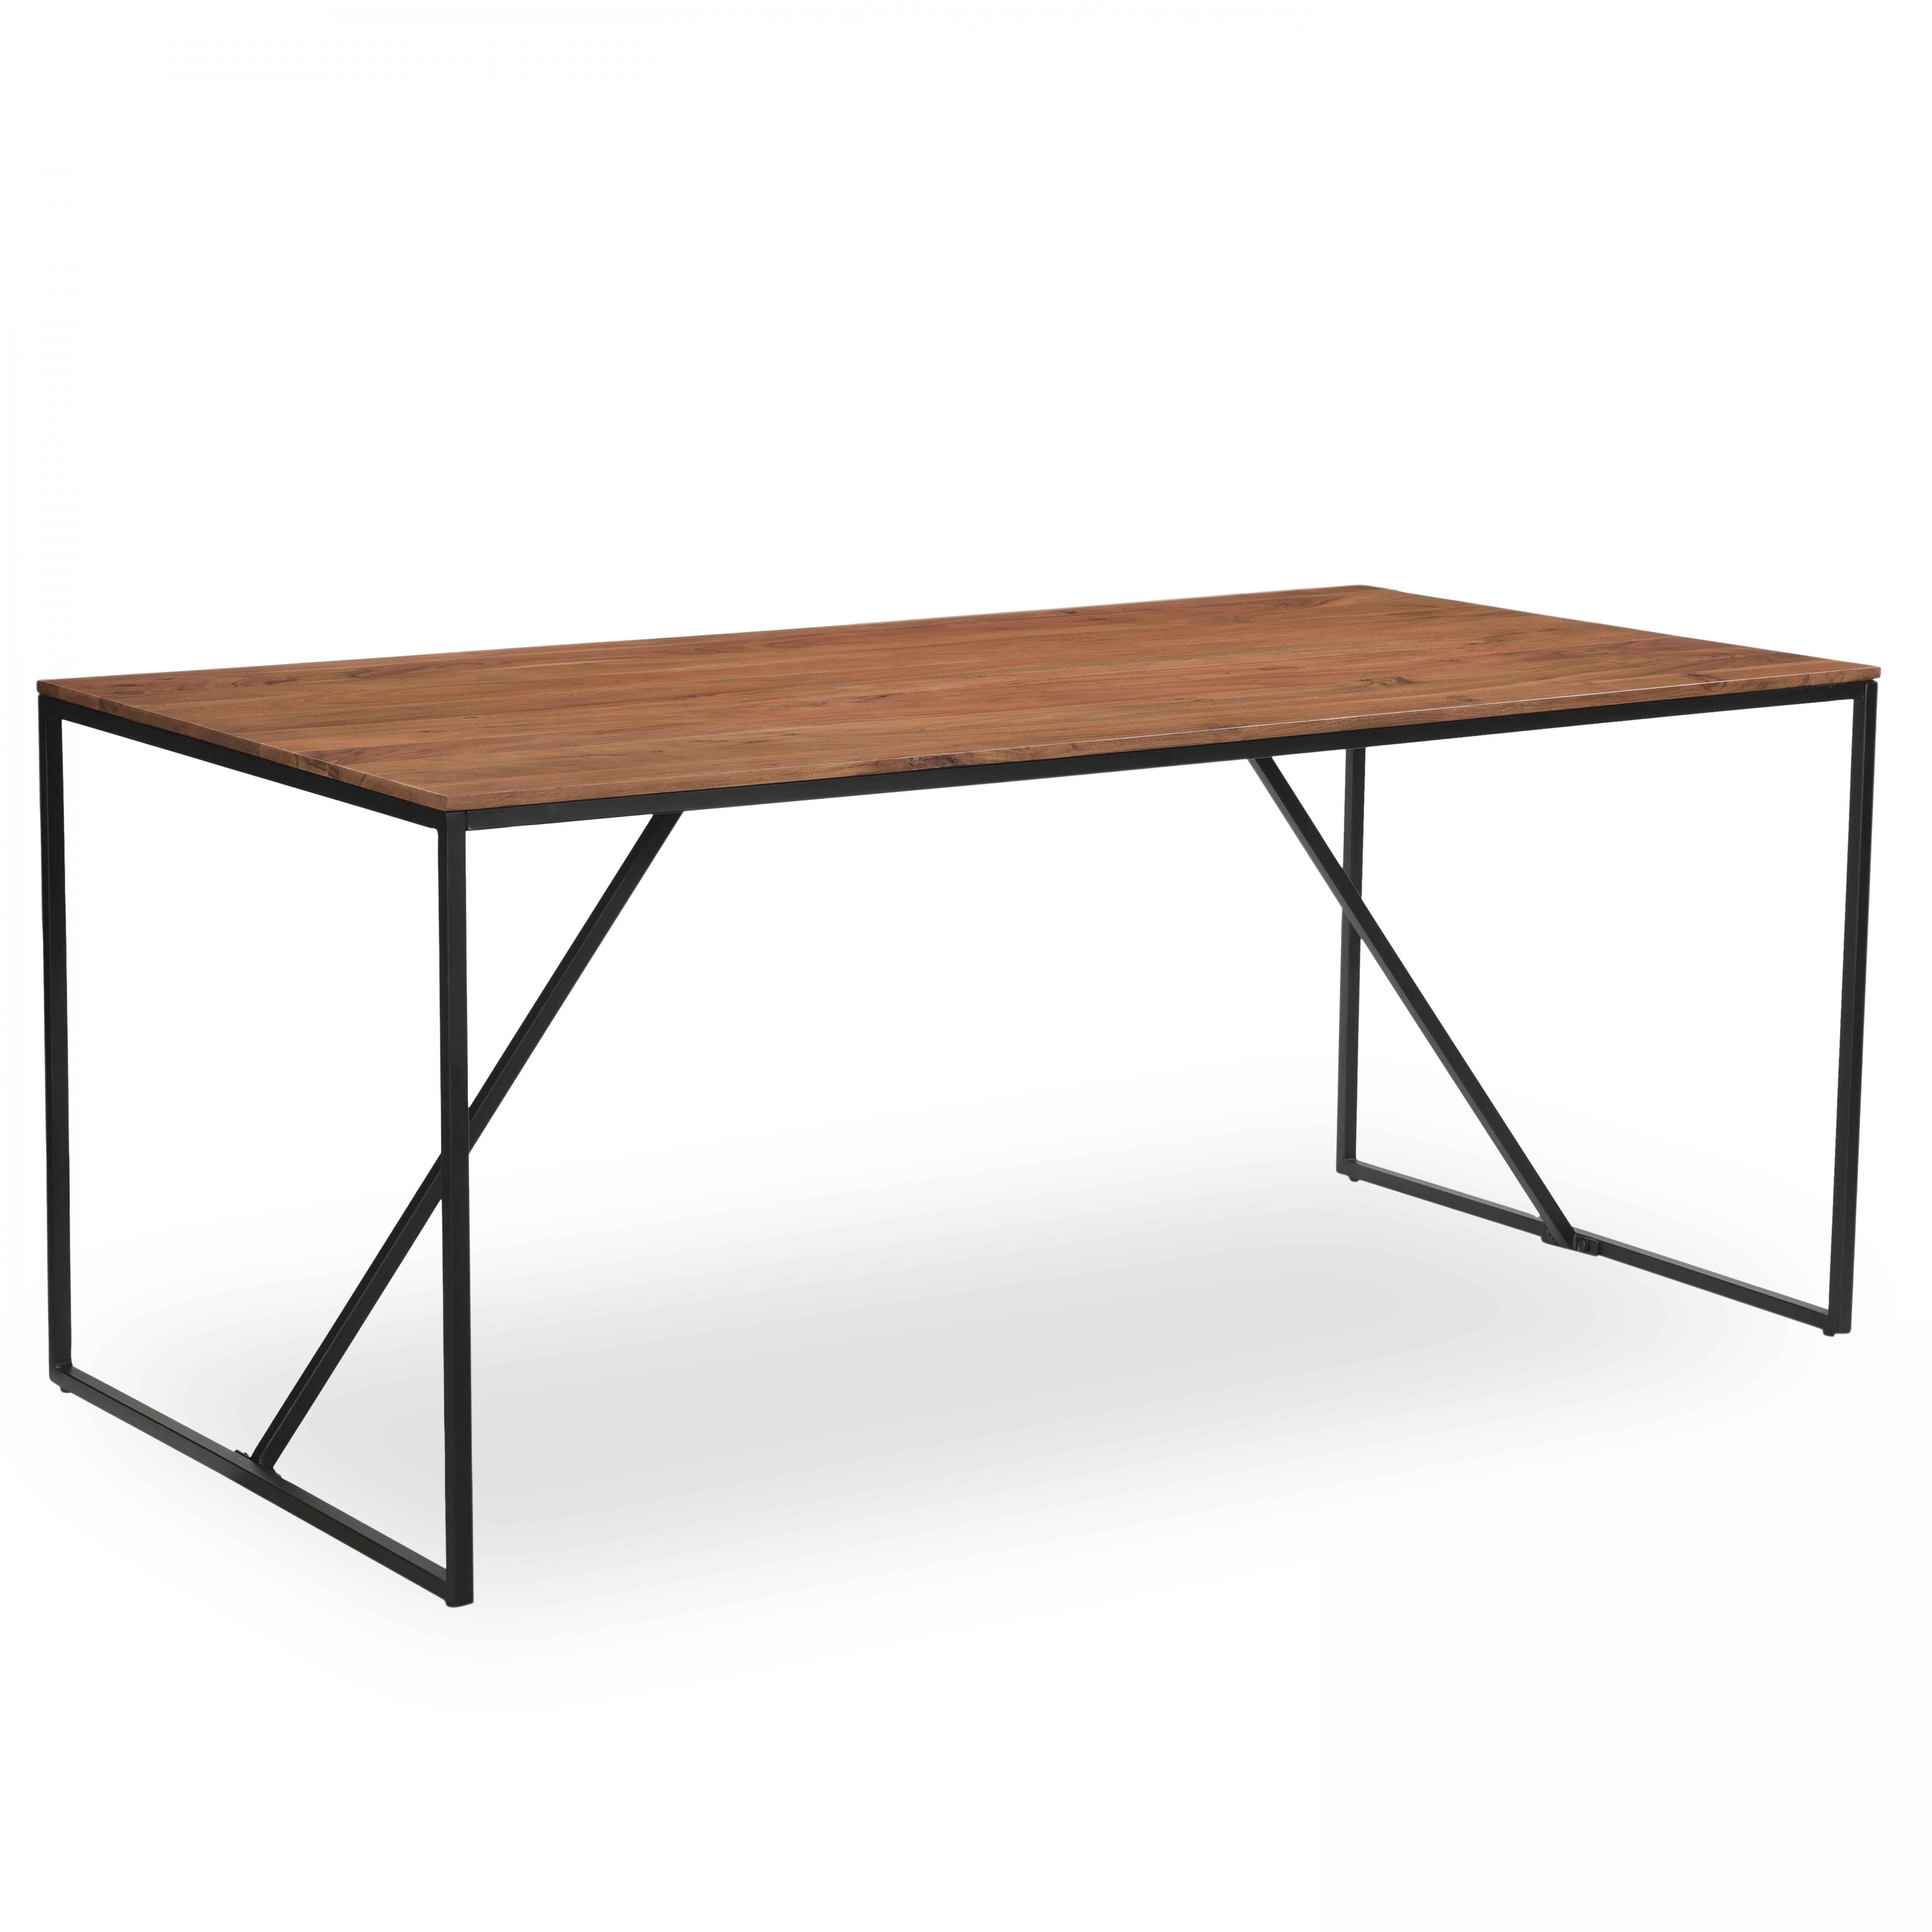 Table en acacia massif 180 cm